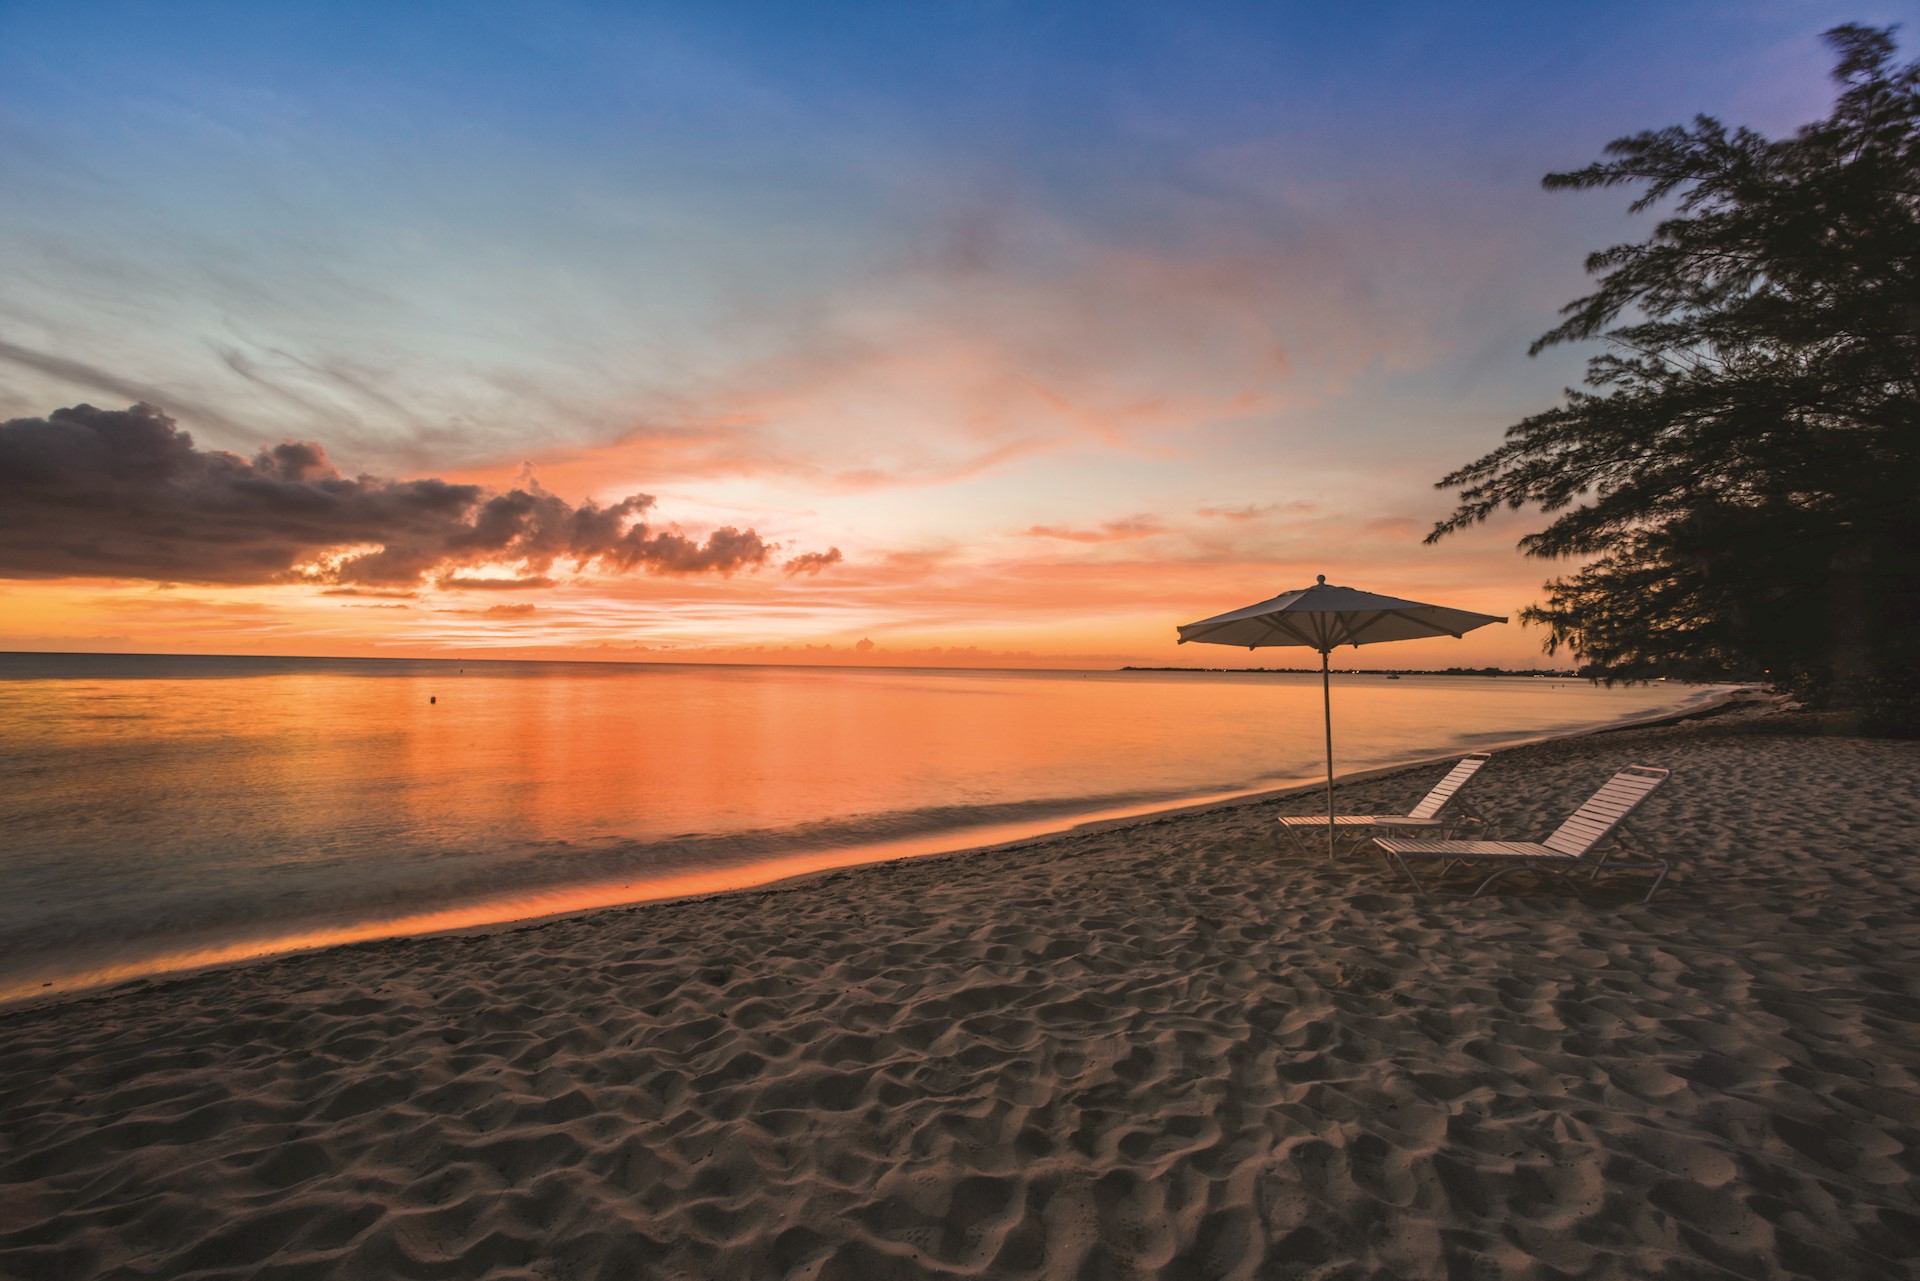  Cayman Islands vacation rentals: Condos & villas